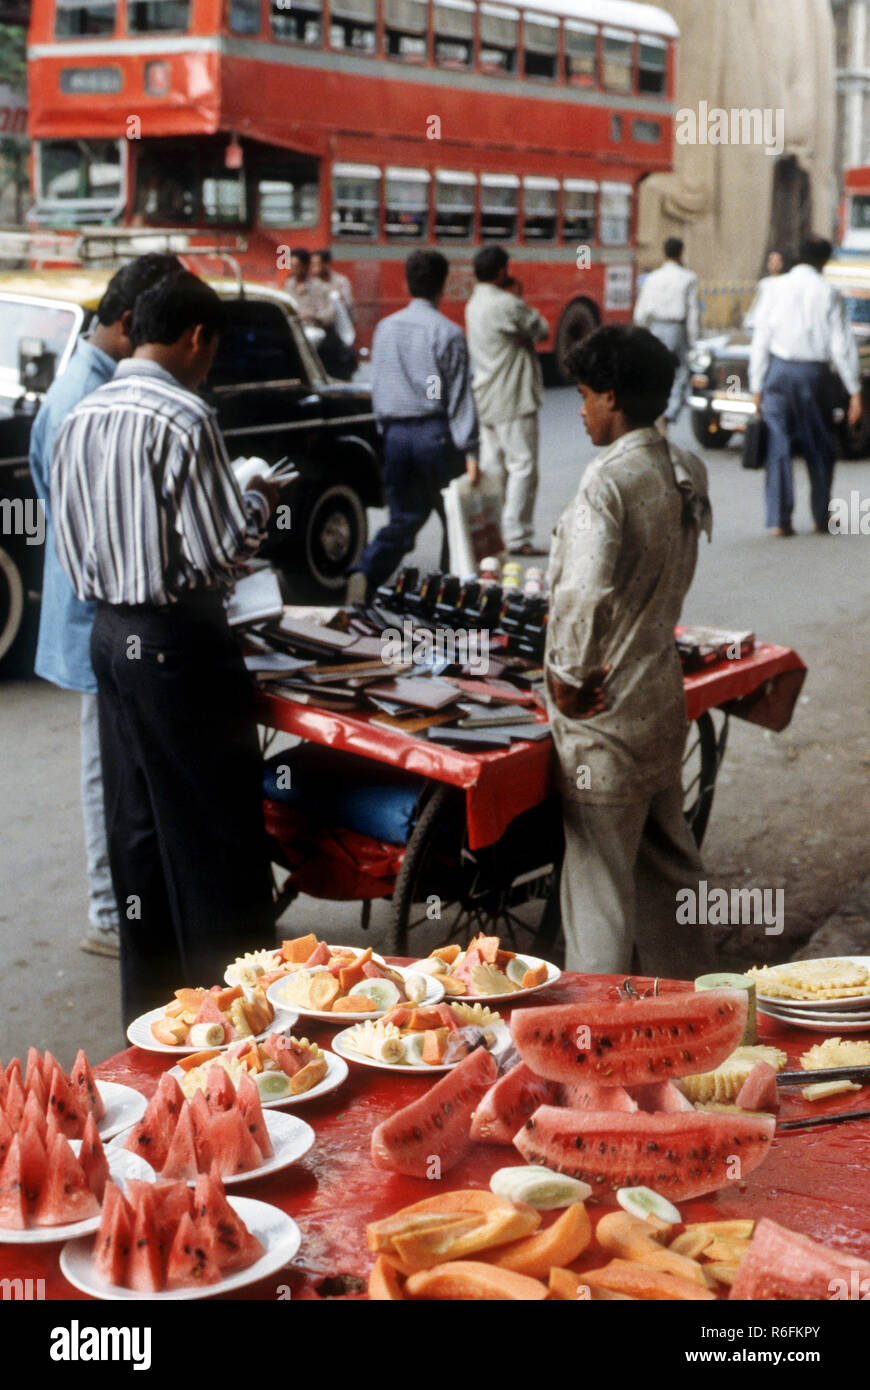 fruits slices sold on the roadside fruit stall, mumbai bombay, maharashtra, india Stock Photo